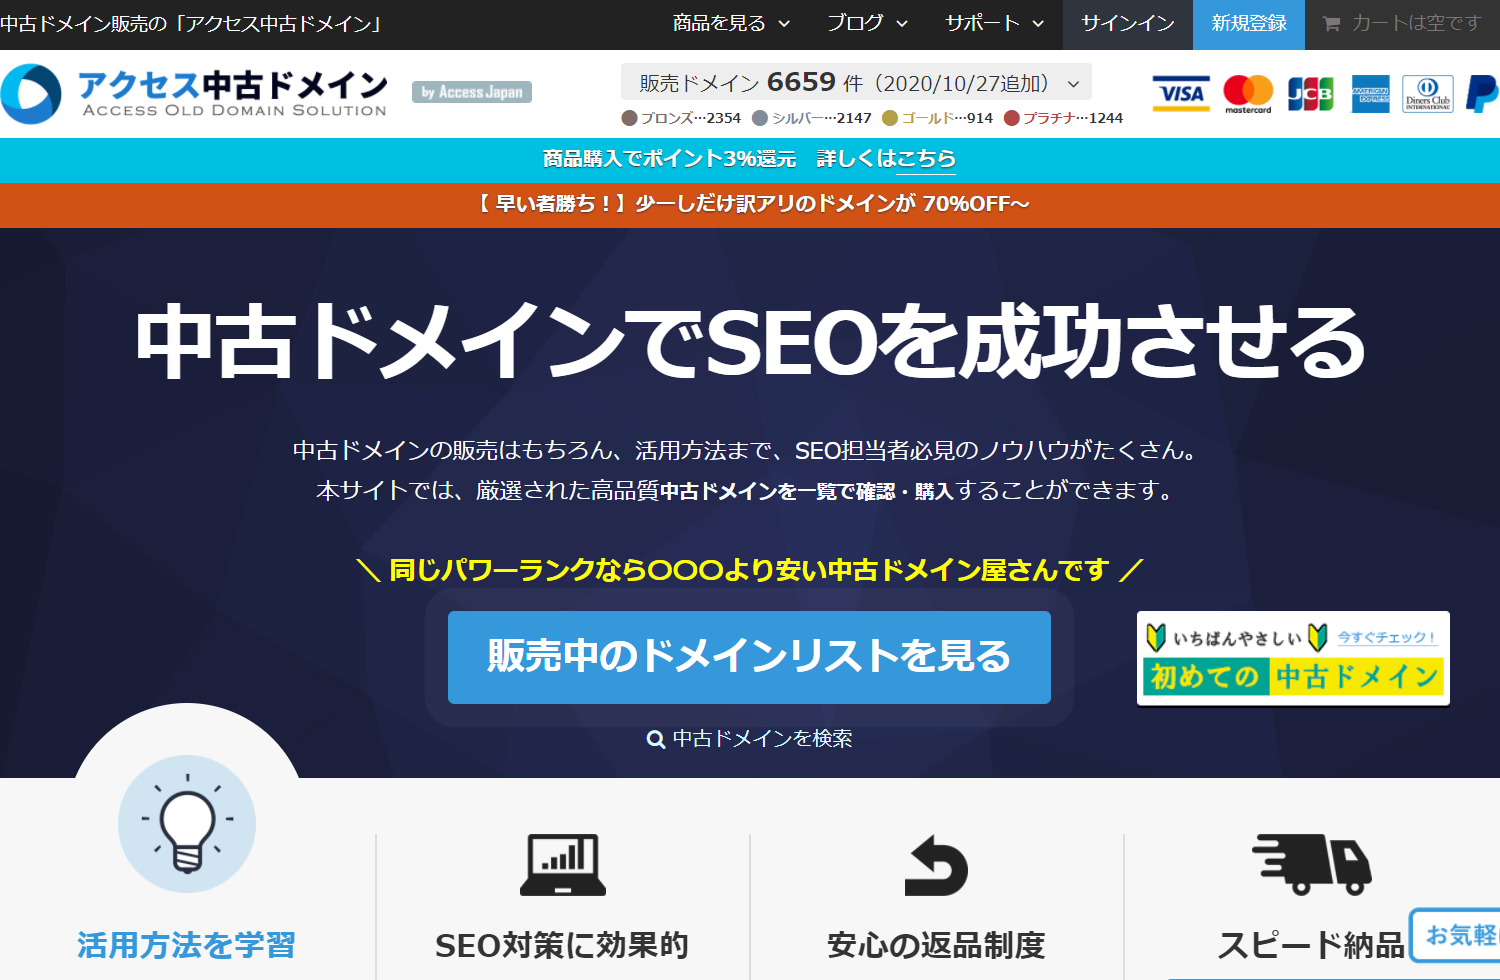 NaoYama Blogがおすすめするドメインサービス「アクセス中古ドメイン」